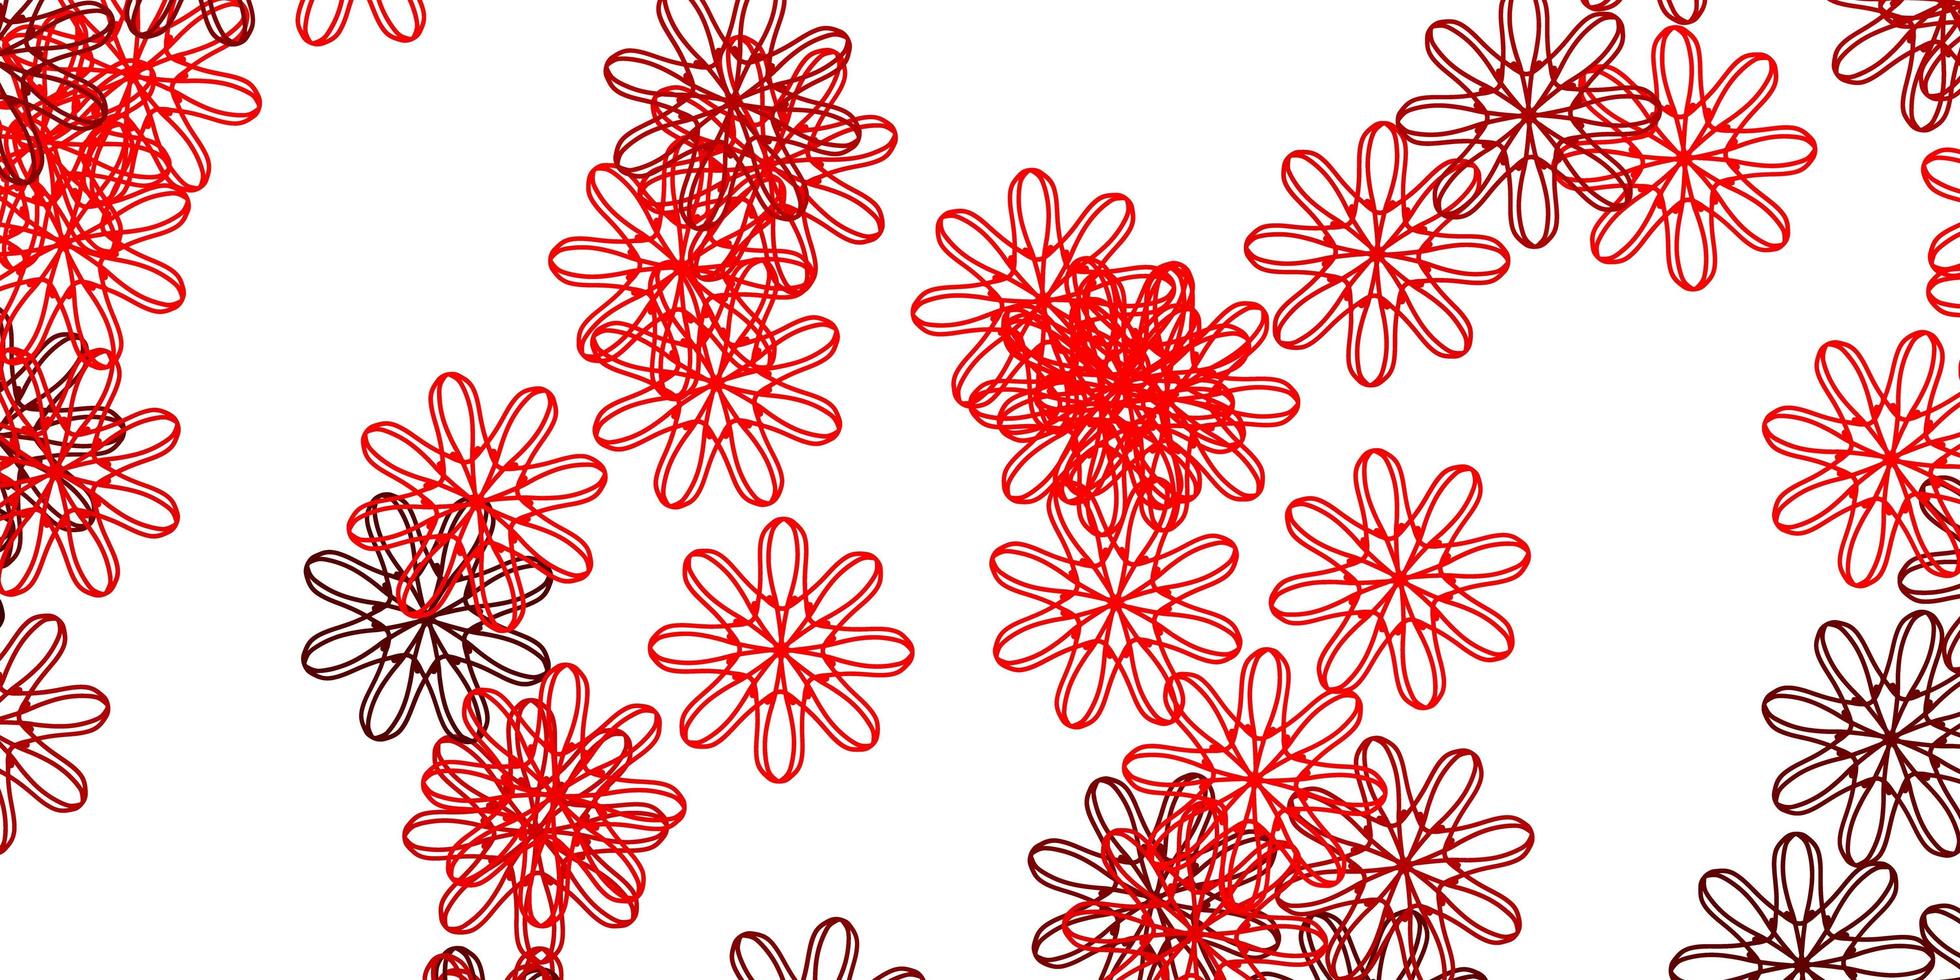 ljusröd vektor doodle mönster med blommor.